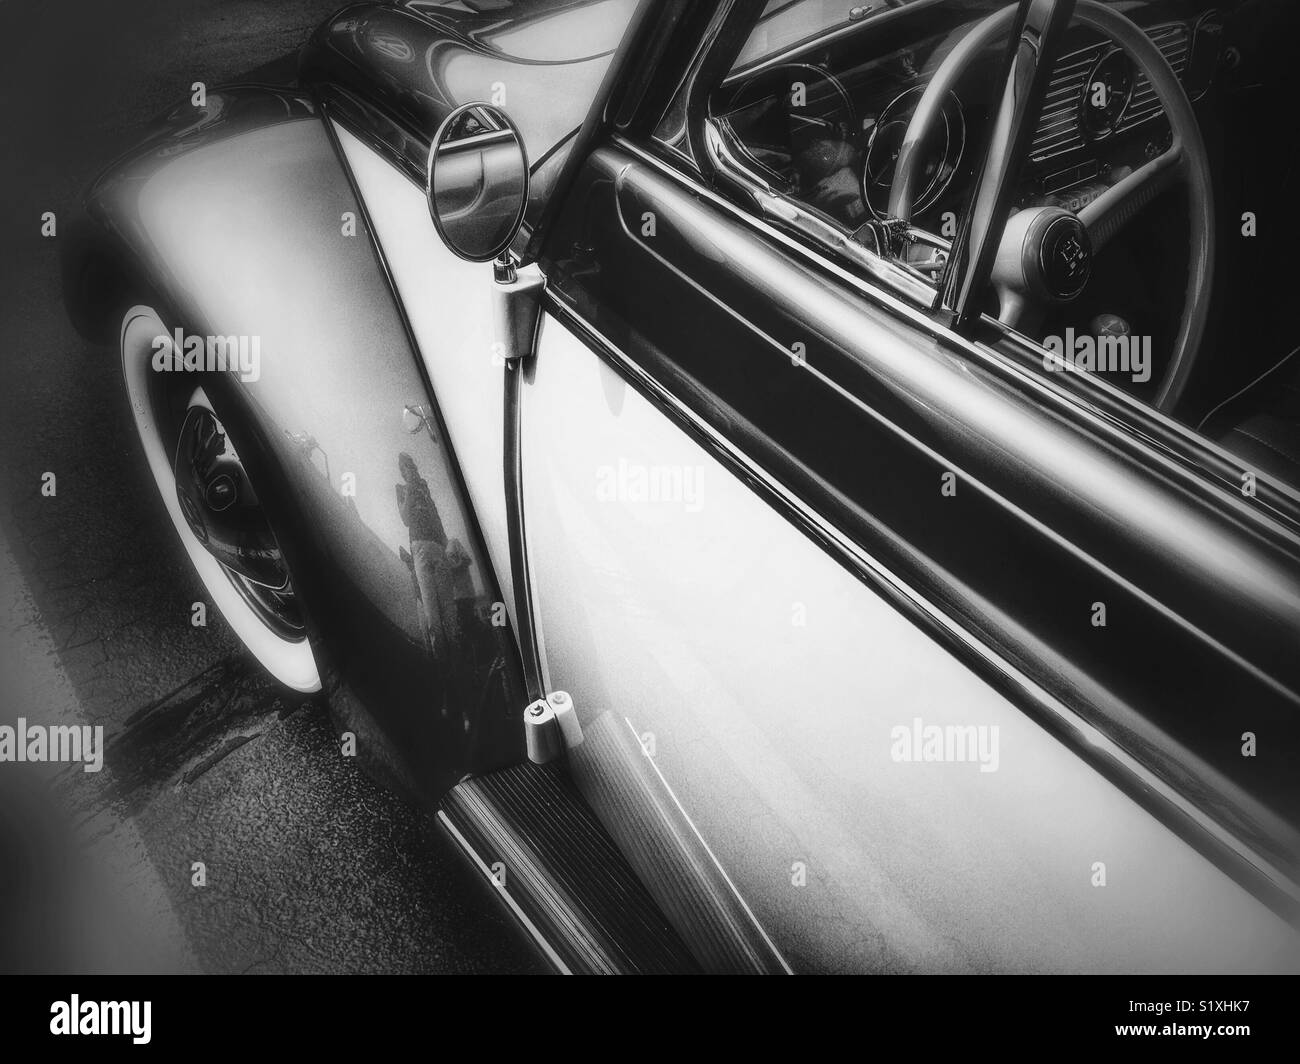 Vintage Volkswagen Beetle Stock Photo